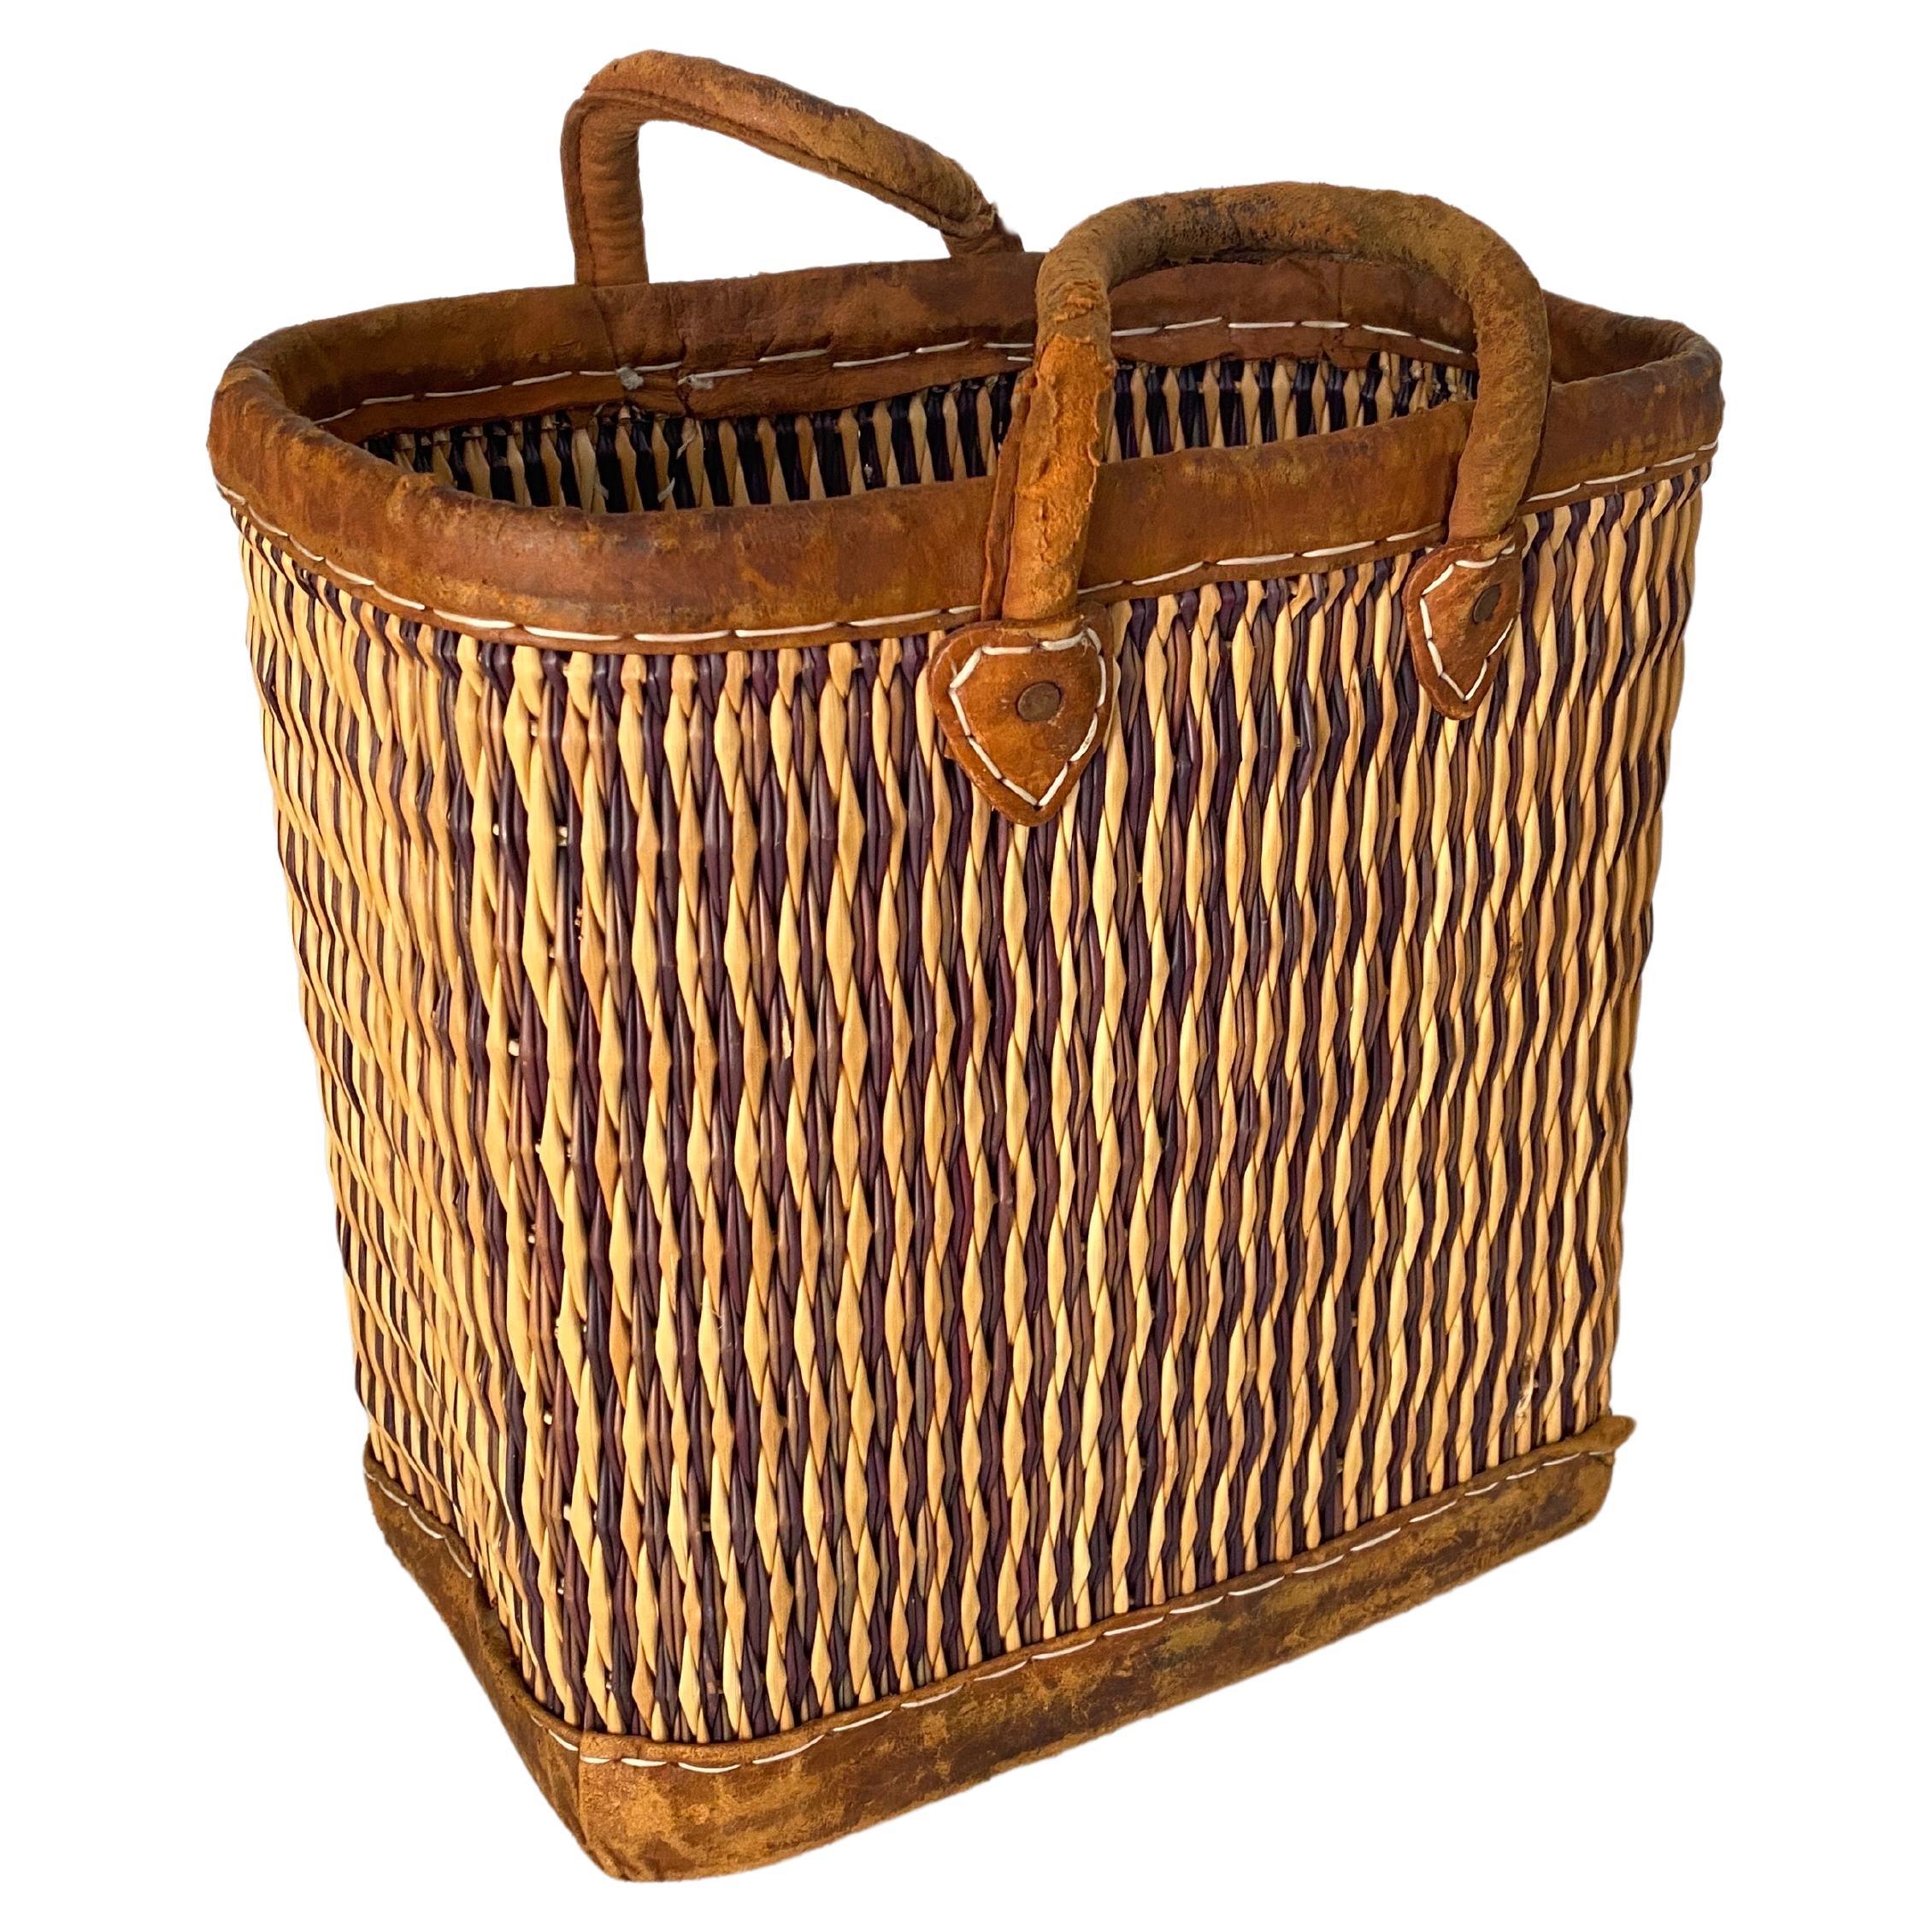 Ce sac est en osier, rotin, avec des poignées en cuir cousues. La couleur est dorée, avec une patine ancienne.
Elle a été fabriquée en France vers 1970.
  